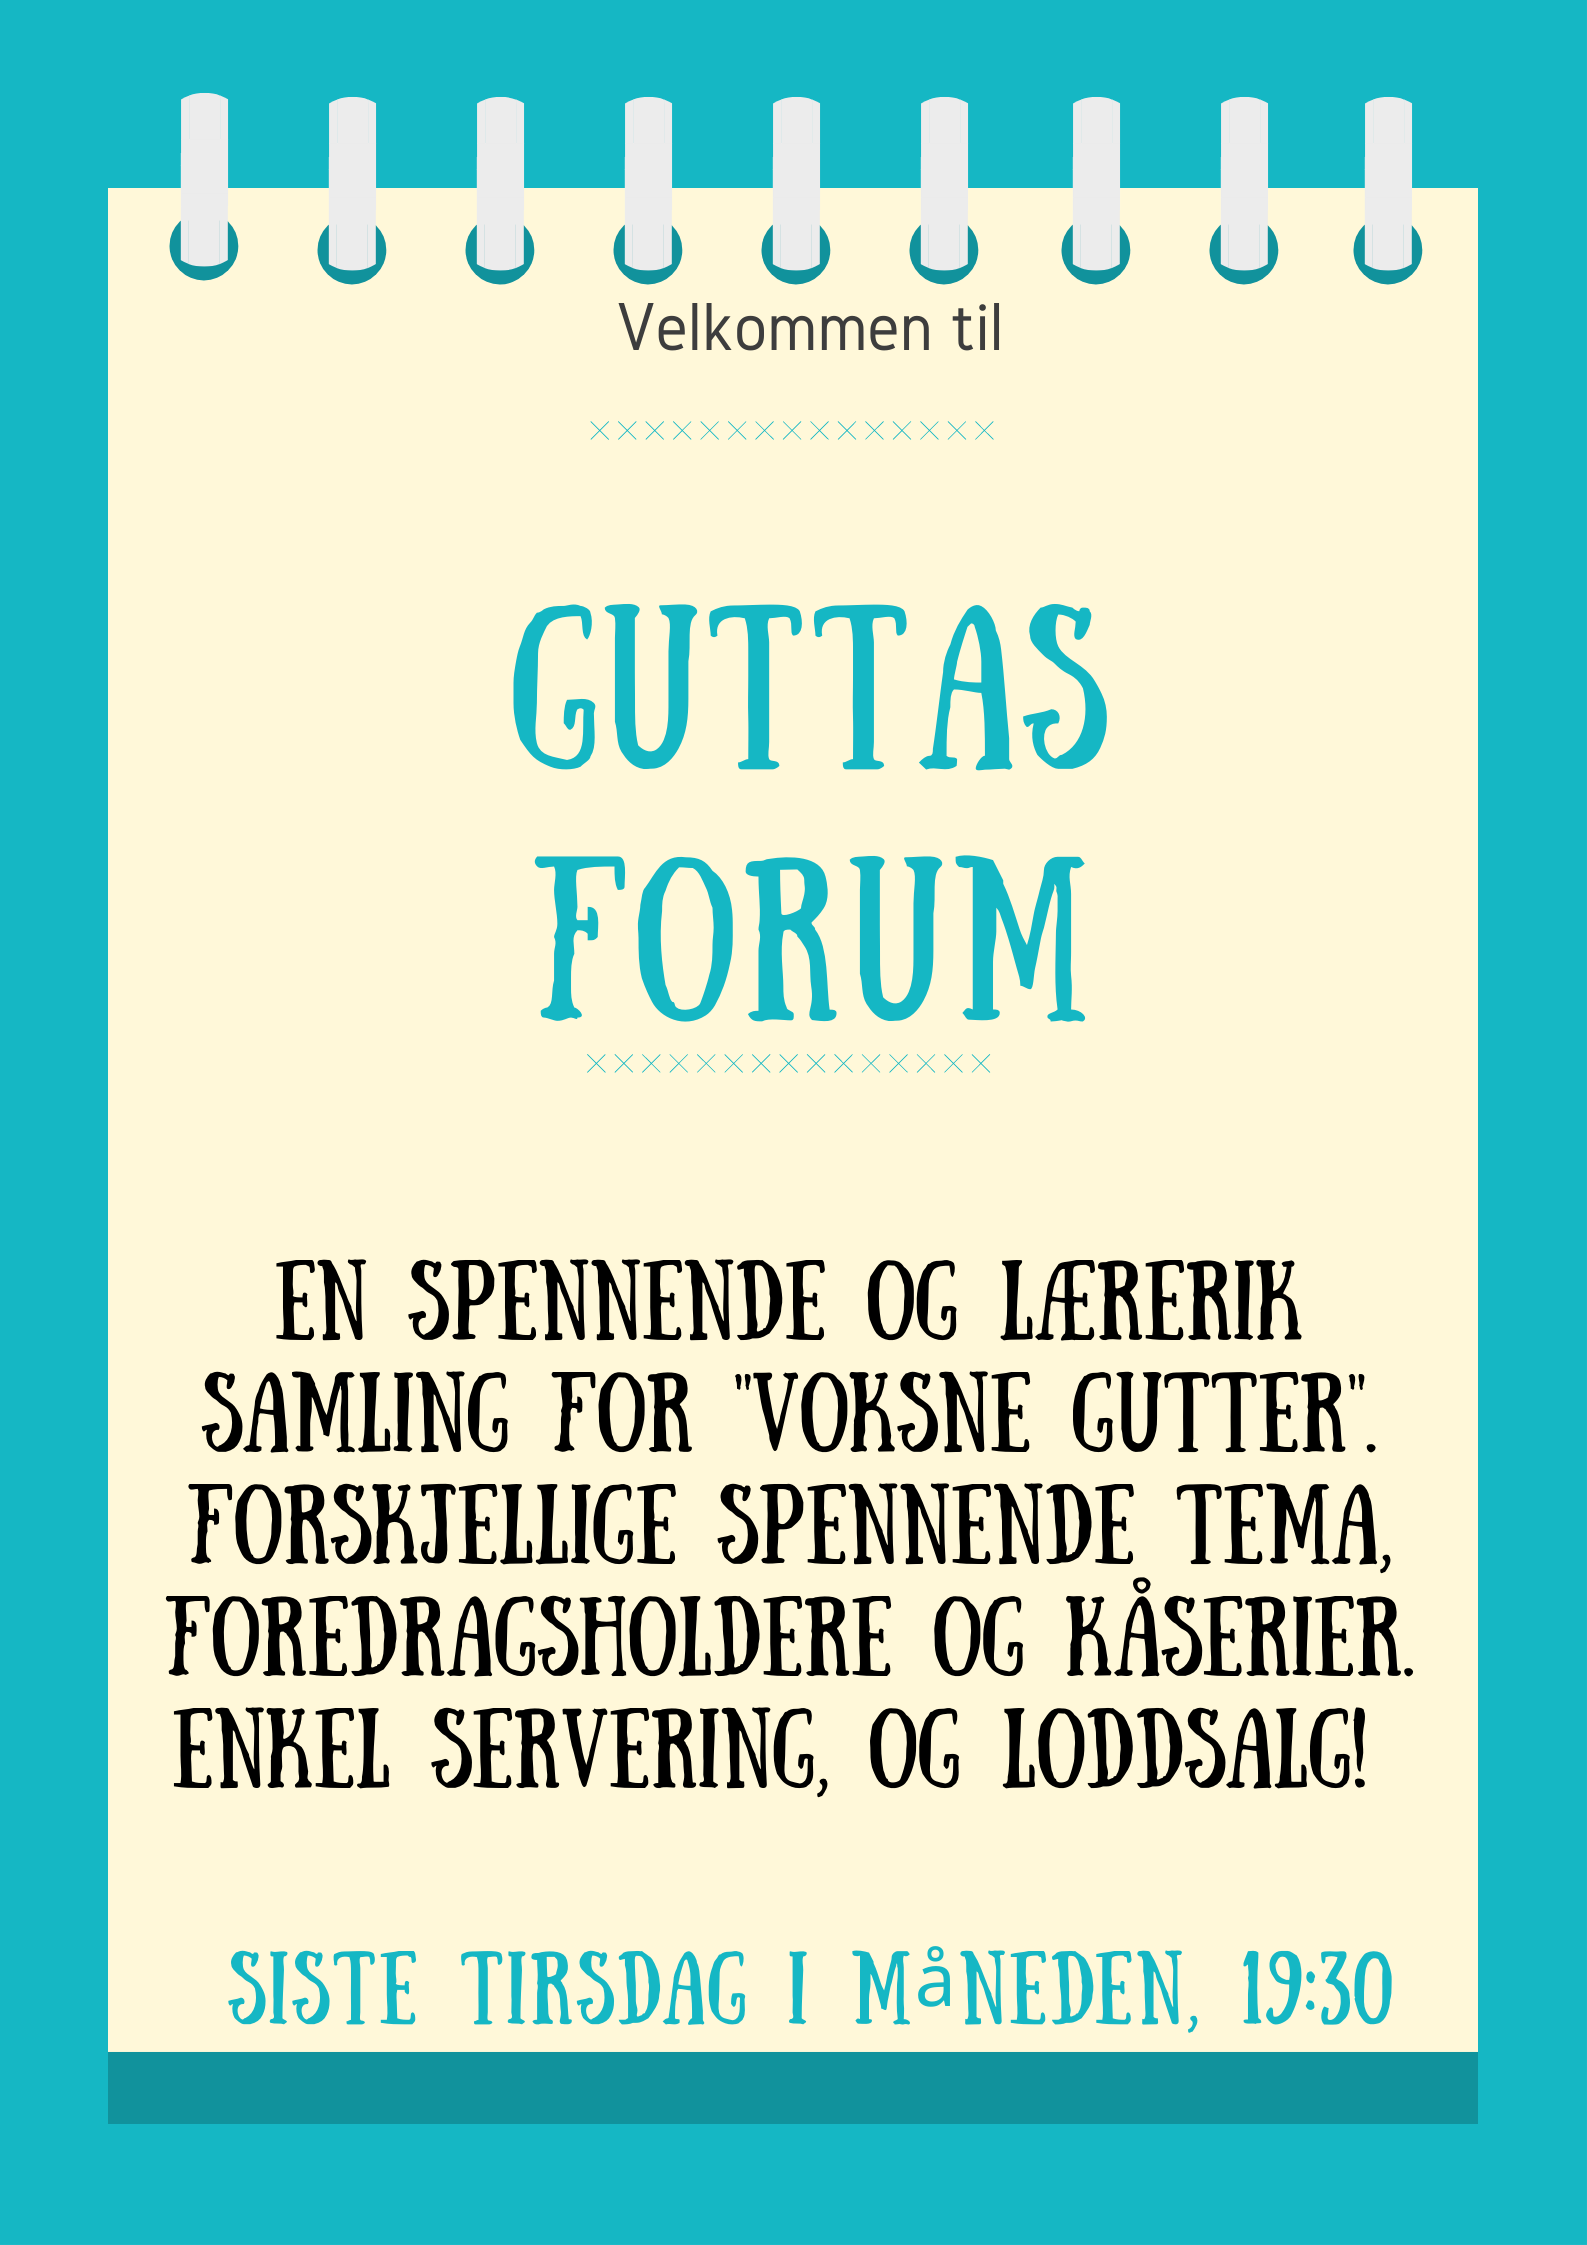 Guttas Forum - Kopi